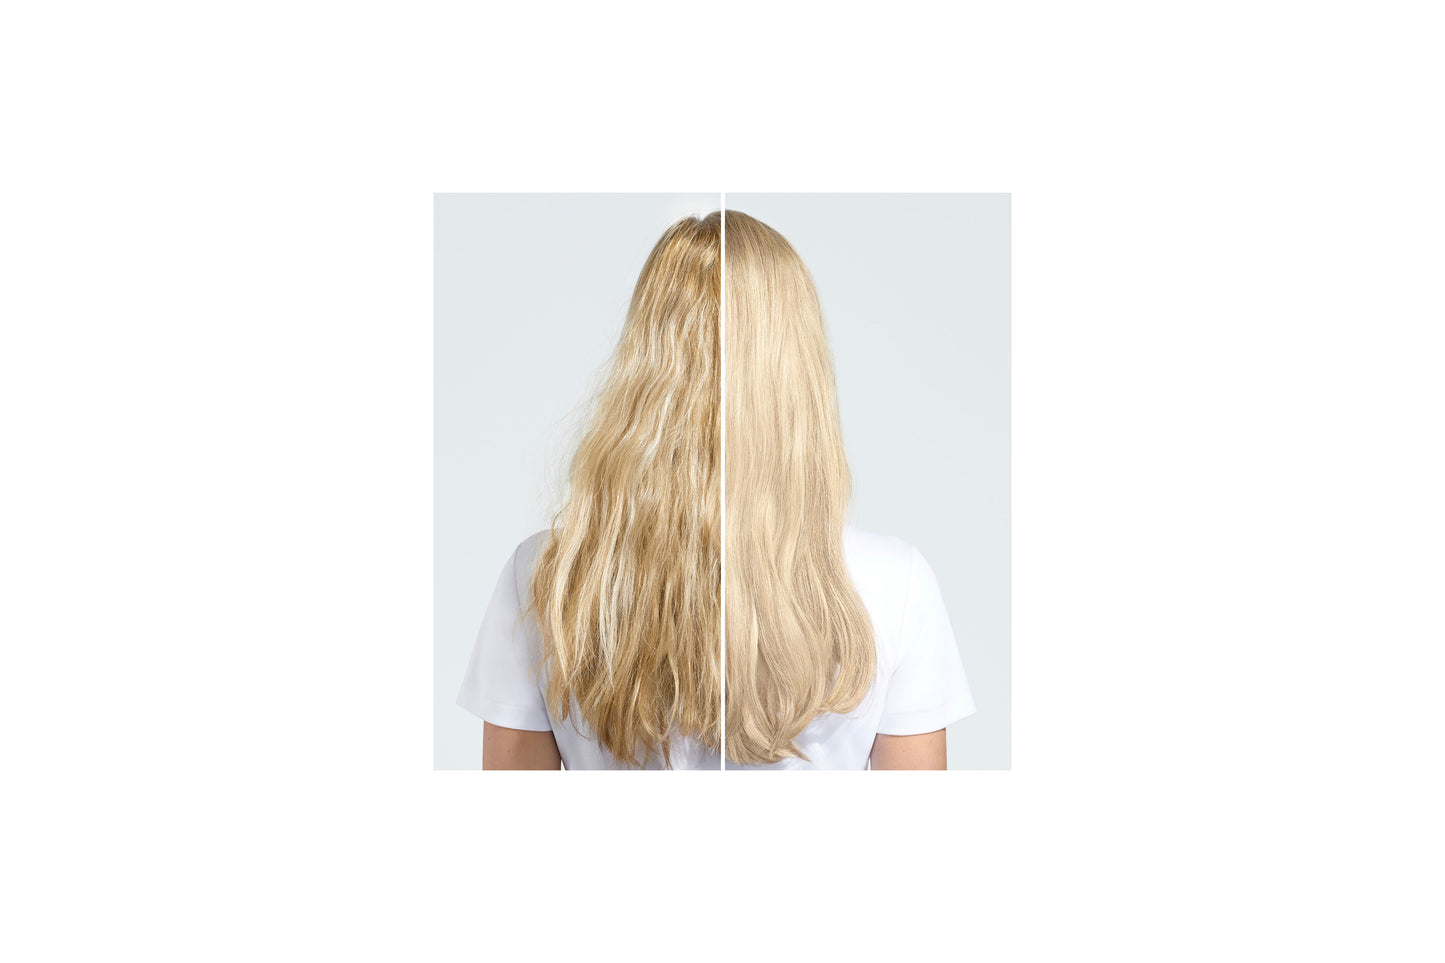 För blekt, slingat blont hår. Yūbi Blonde Anti-Brass Purple Shampoo, med japansk pigment-teknologi, är berikat med extrakt från vit pion. schampot bekämpar oönskade varma undertoner för en långvarig kall blond nyans. produkten rengör varsamt och adderar en naturlig lyster till håret.  300 ml